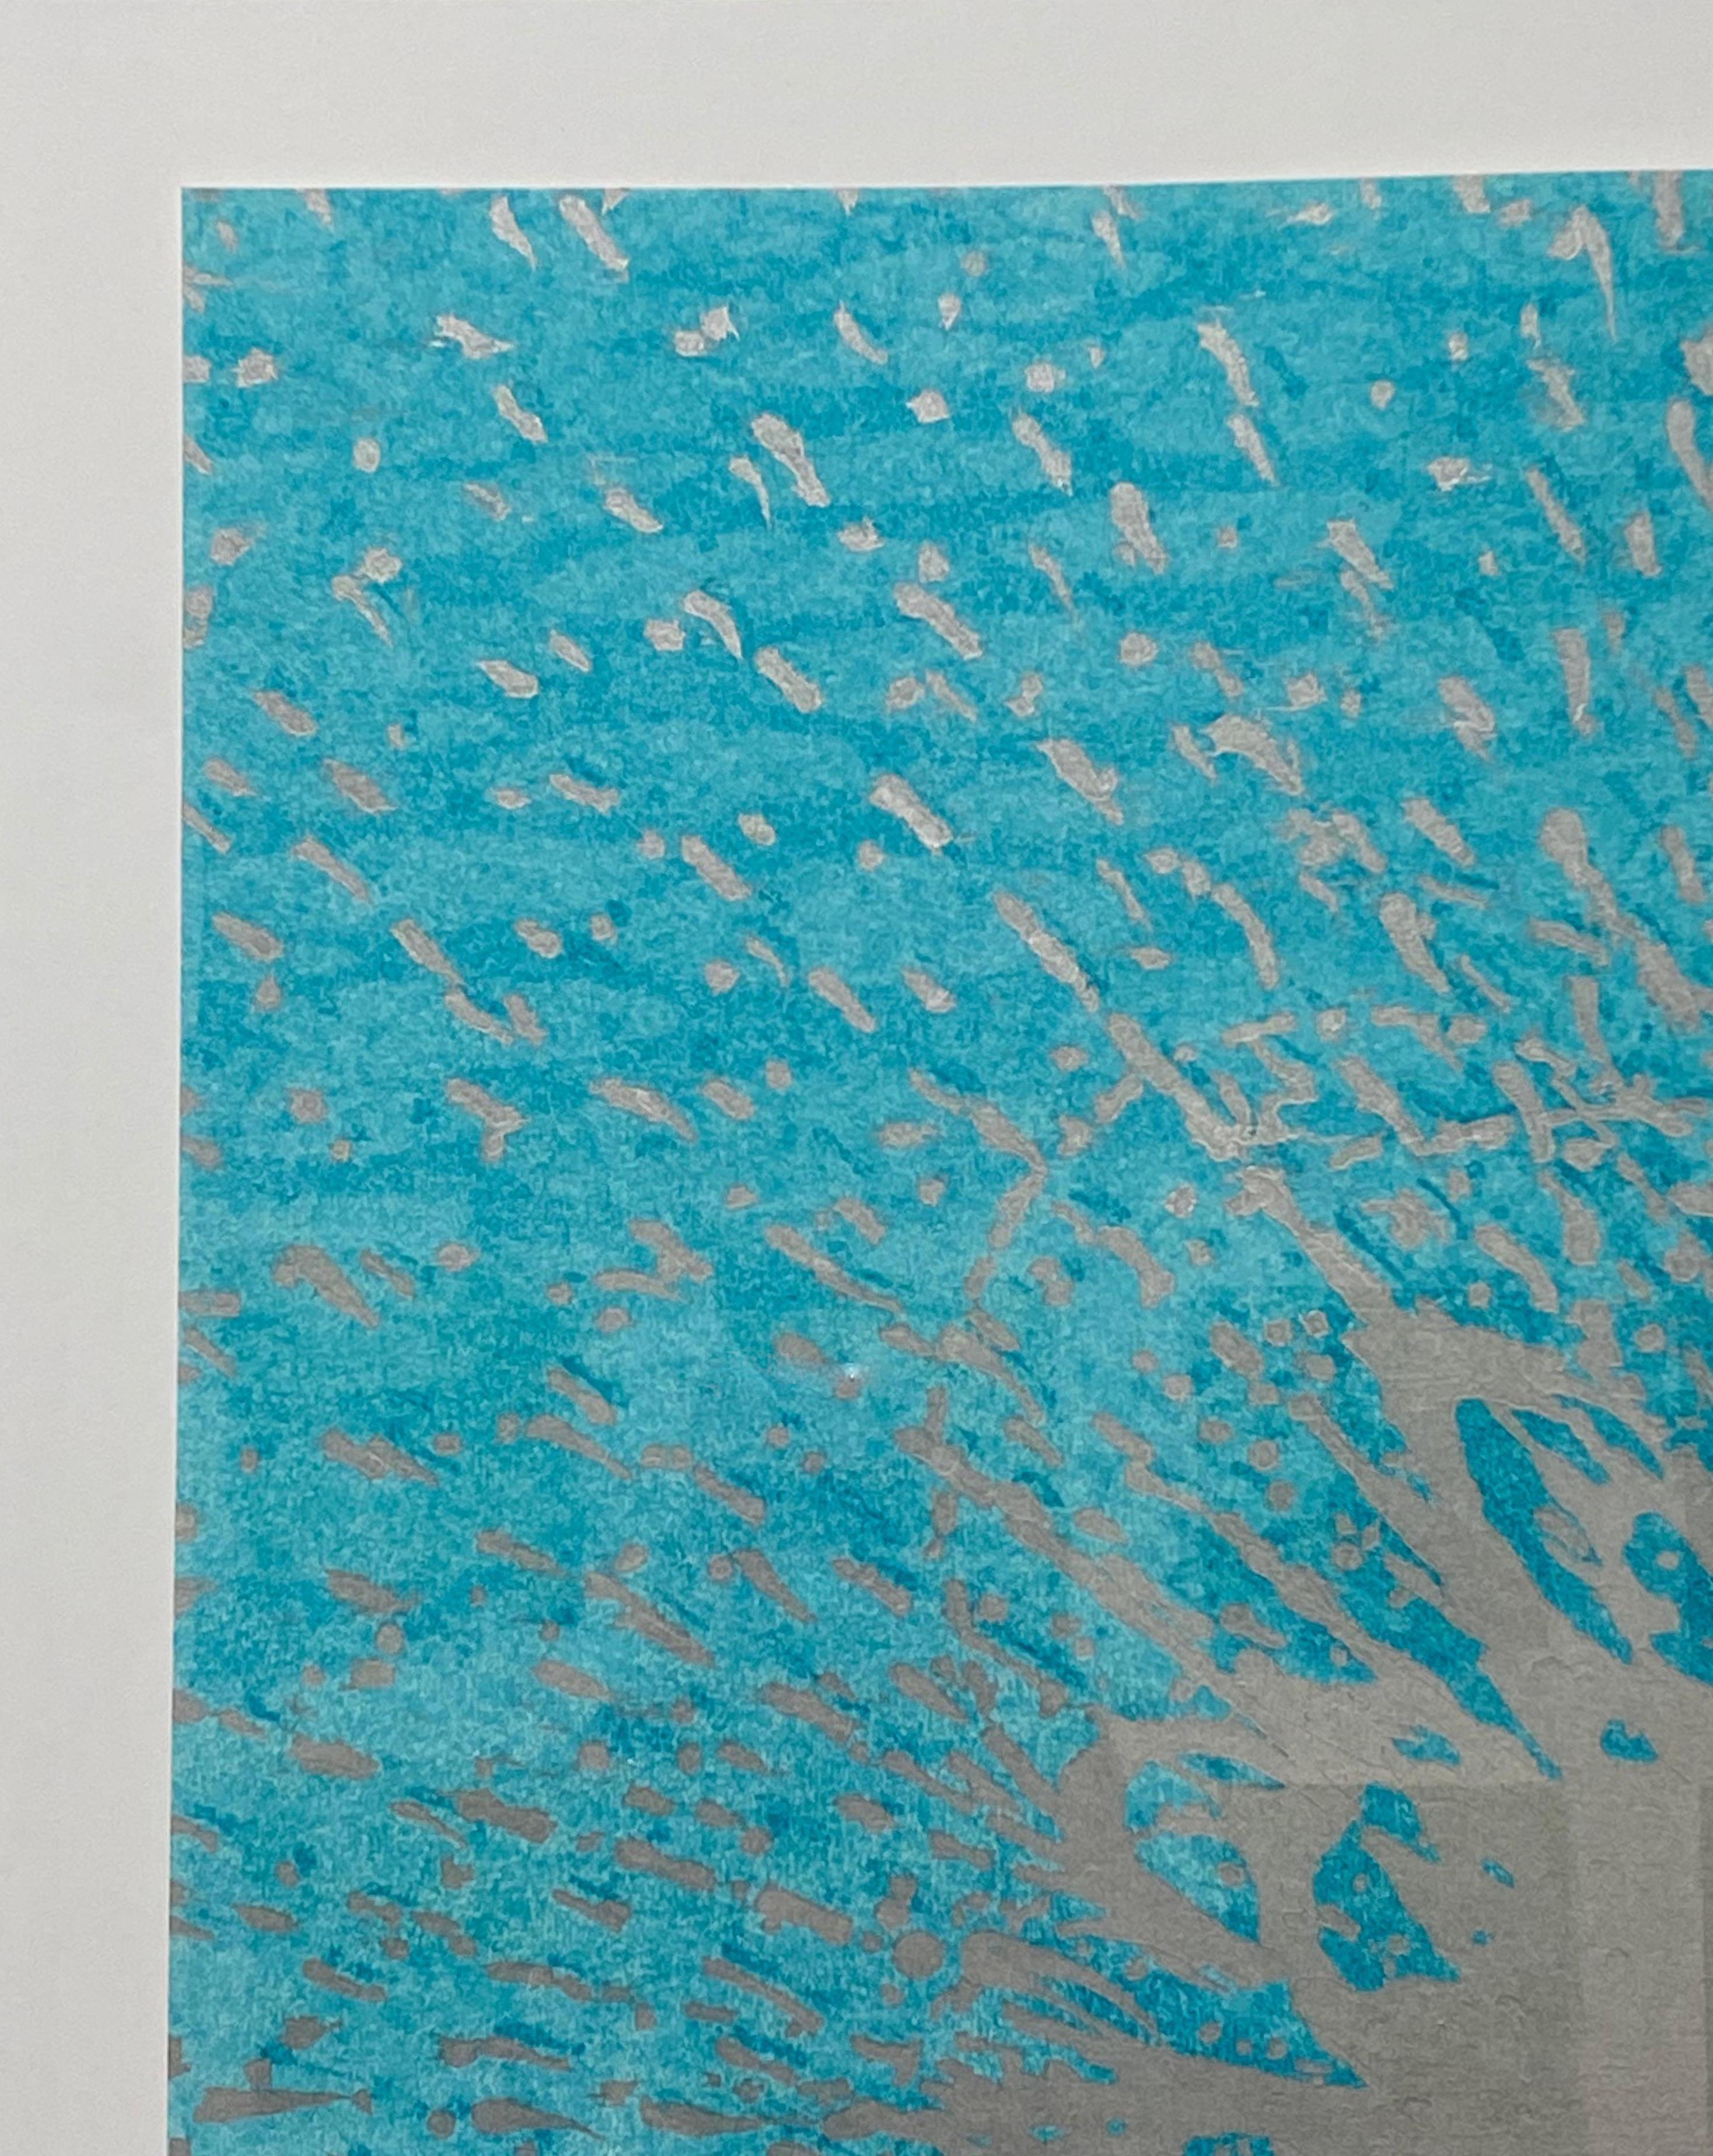 Dieser quadratische Holzschnitt auf Papier besteht aus einer zentralen, kreisförmigen, silberfarbenen Metallform, die sich zu einem abstrakten Muster auf einem leuchtend türkisblauen Hintergrund ausbreitet, der den subtilen Metallglanz der silbernen